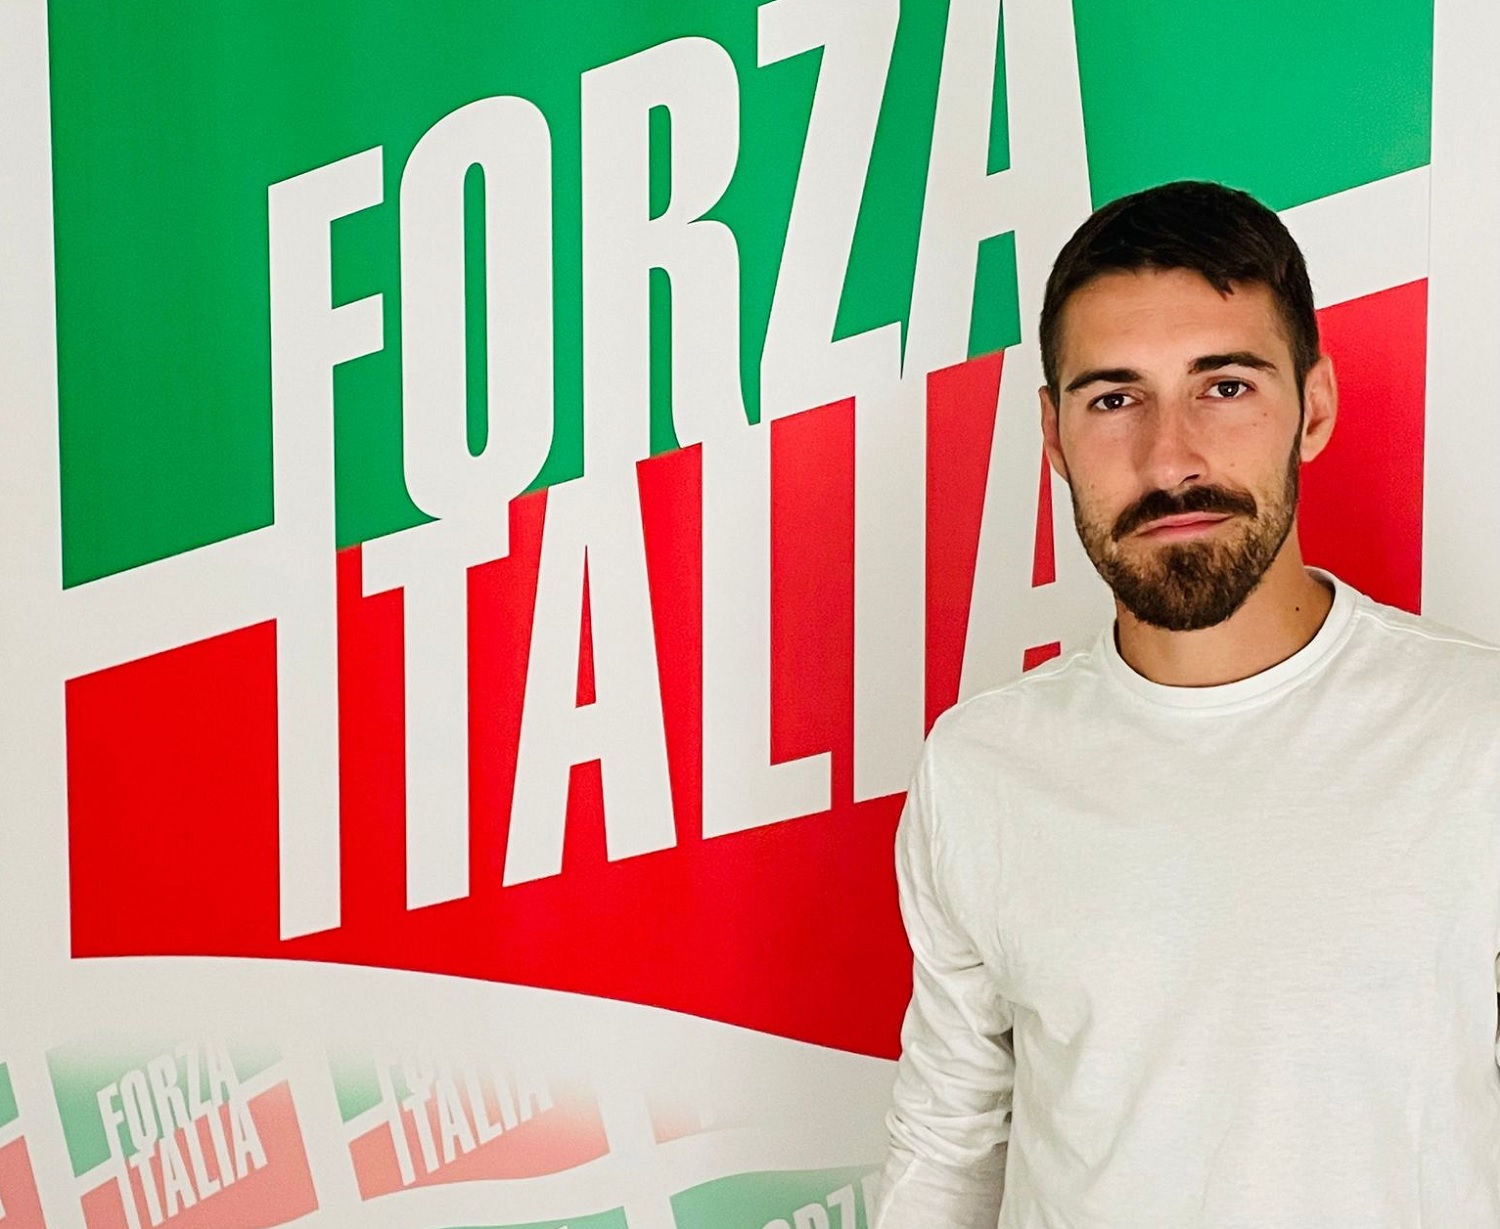 Altro addio nelle file di Mastella, Felice Pepe aderisce a Forza Italia.